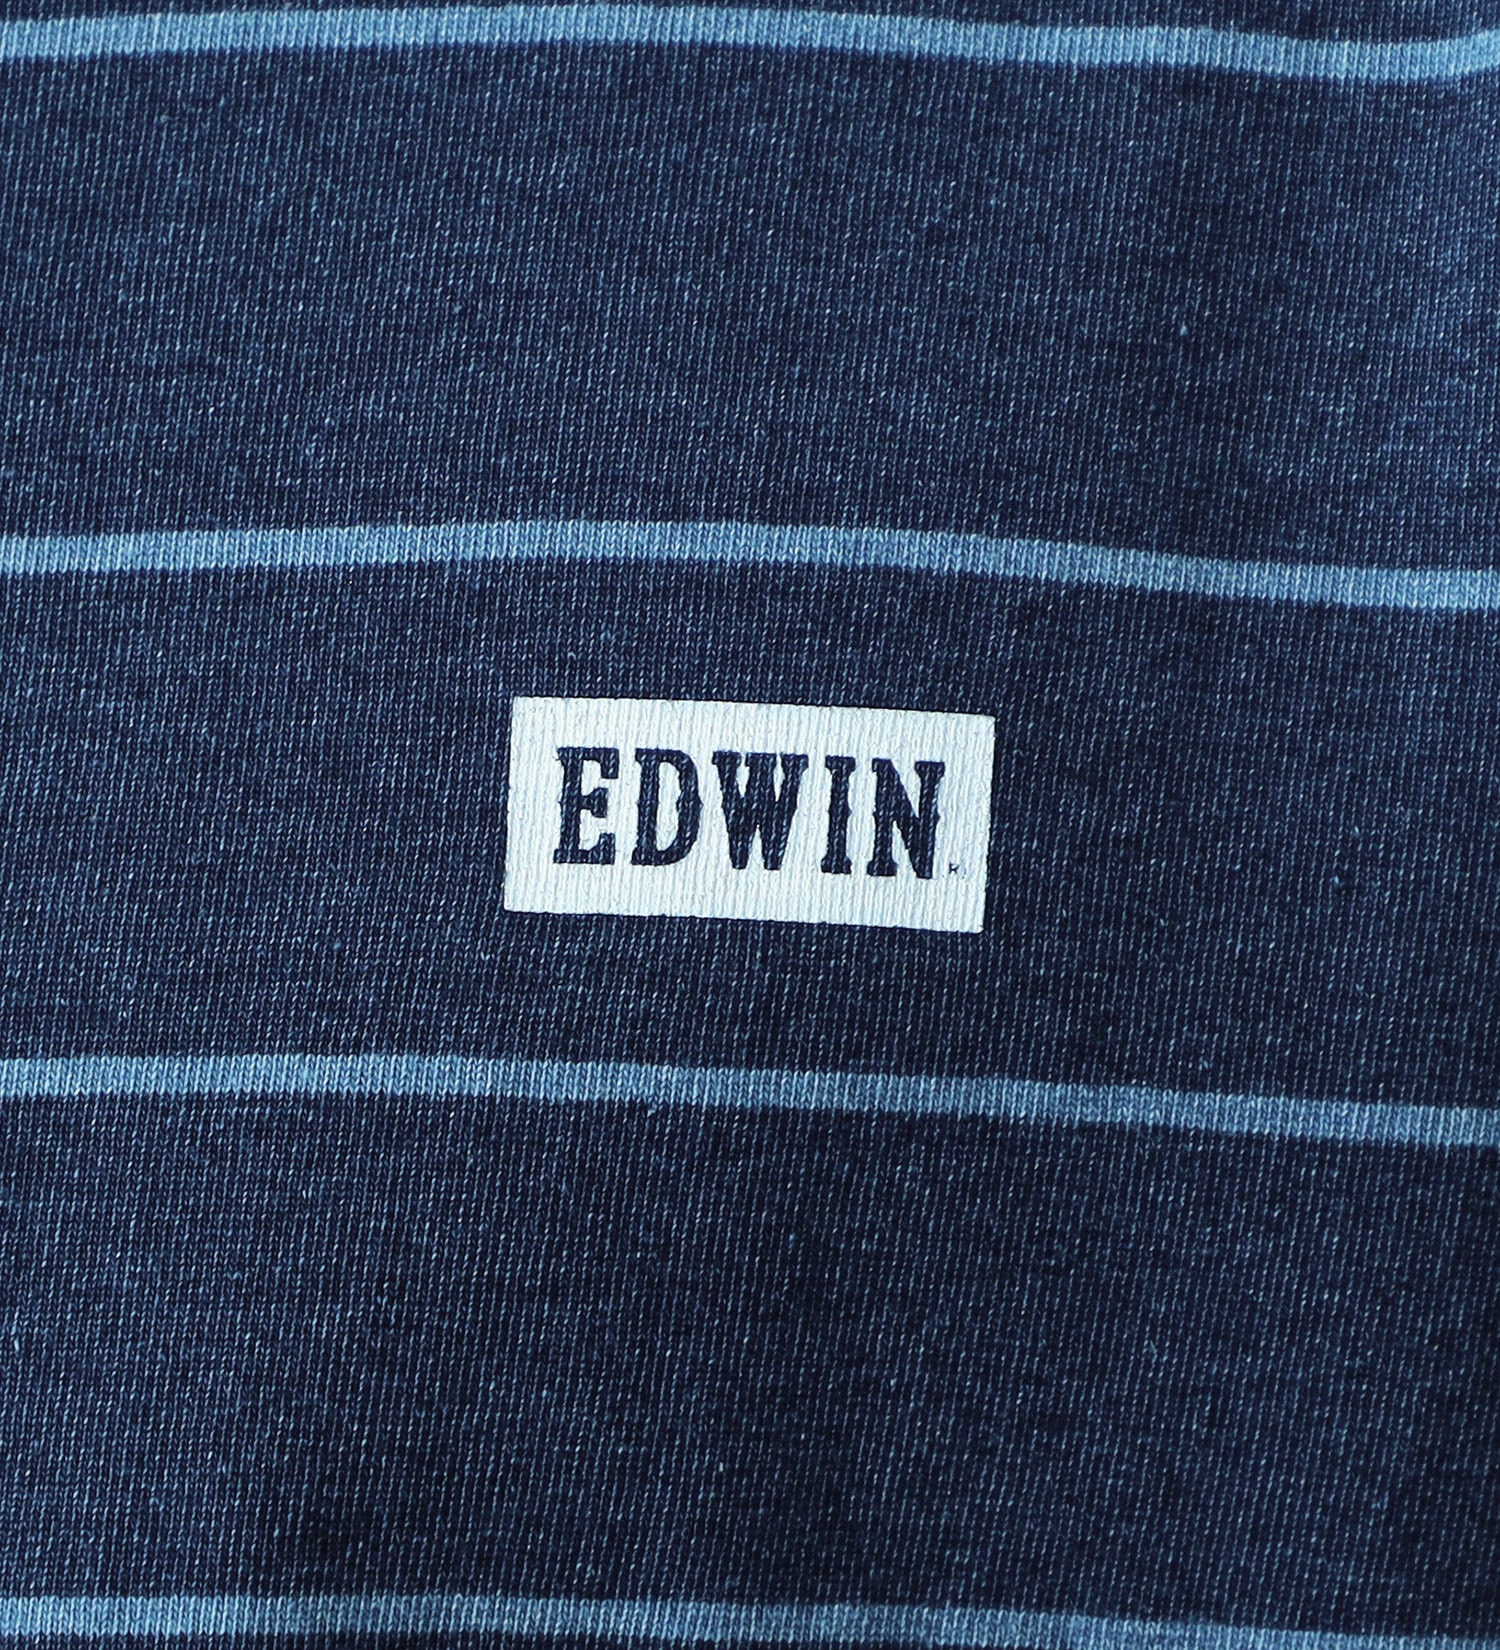 EDWIN(エドウイン)のインディゴ半袖Tシャツ【アウトレット店舗・WEB限定】|トップス/Tシャツ/カットソー/メンズ|ストライプ